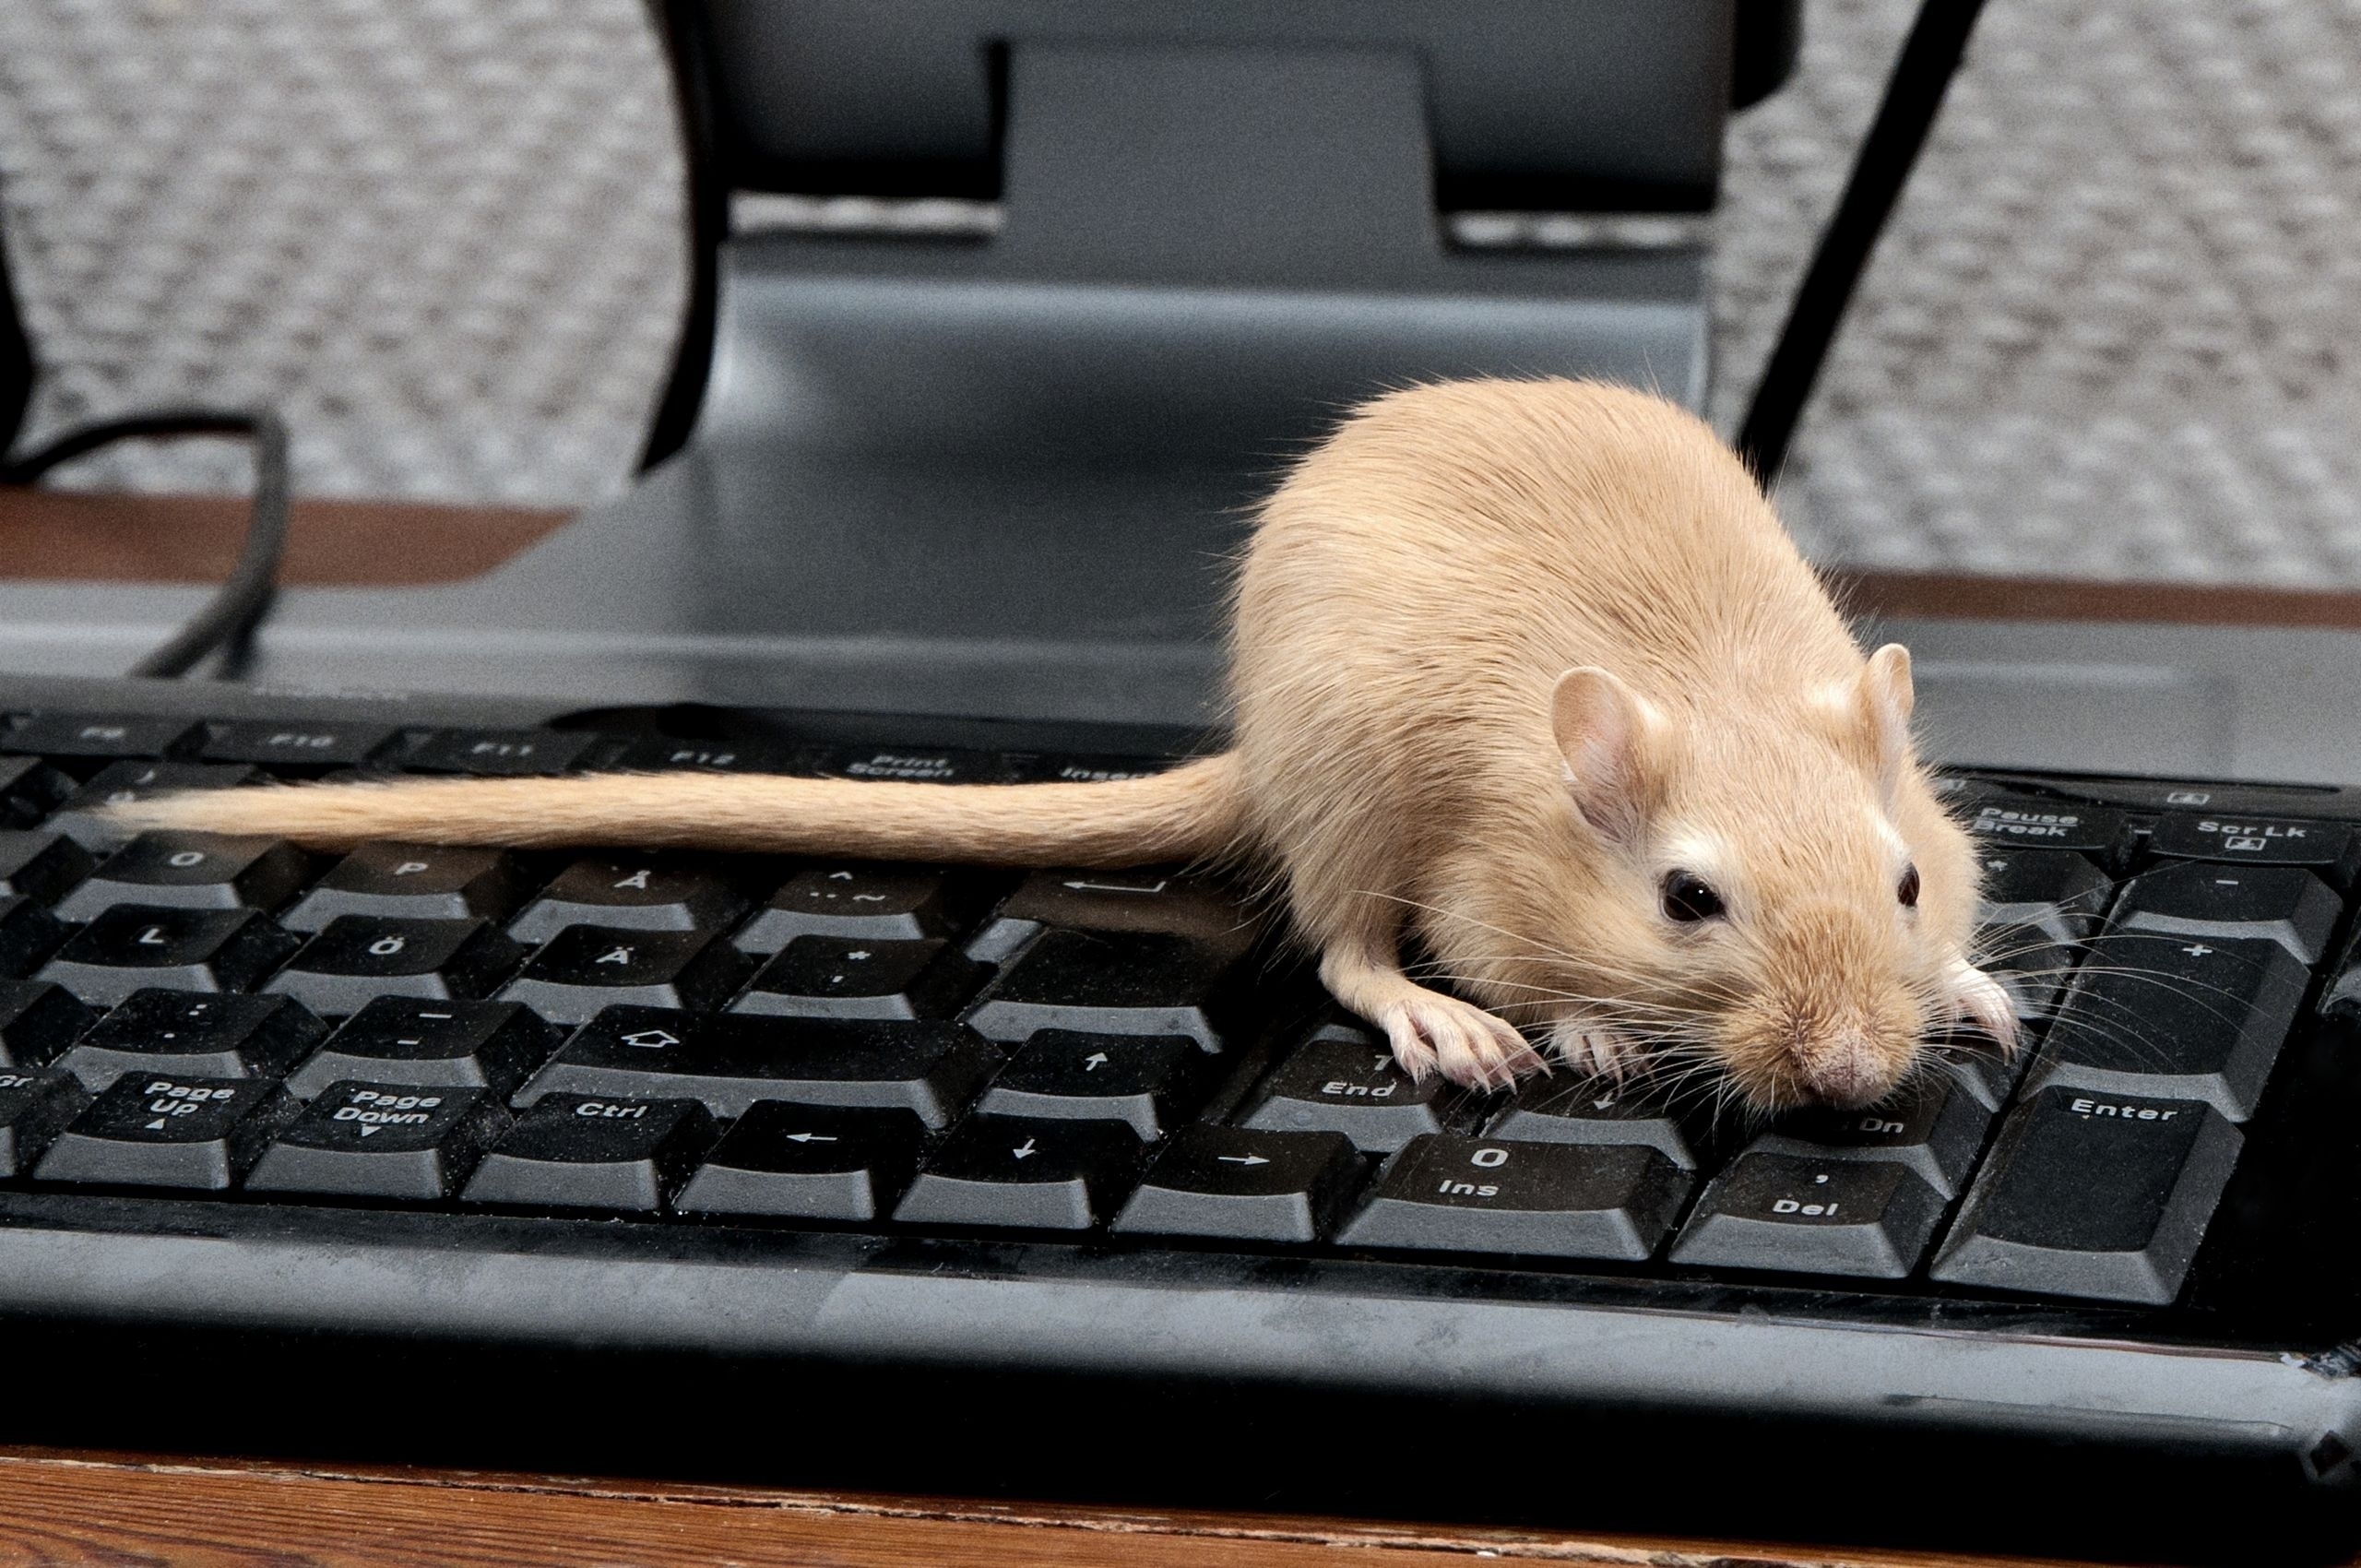 Скачать обои бесплатно Крыса, Лазать, Мышь, Животные, Грызун, Клавиатура картинка на рабочий стол ПК